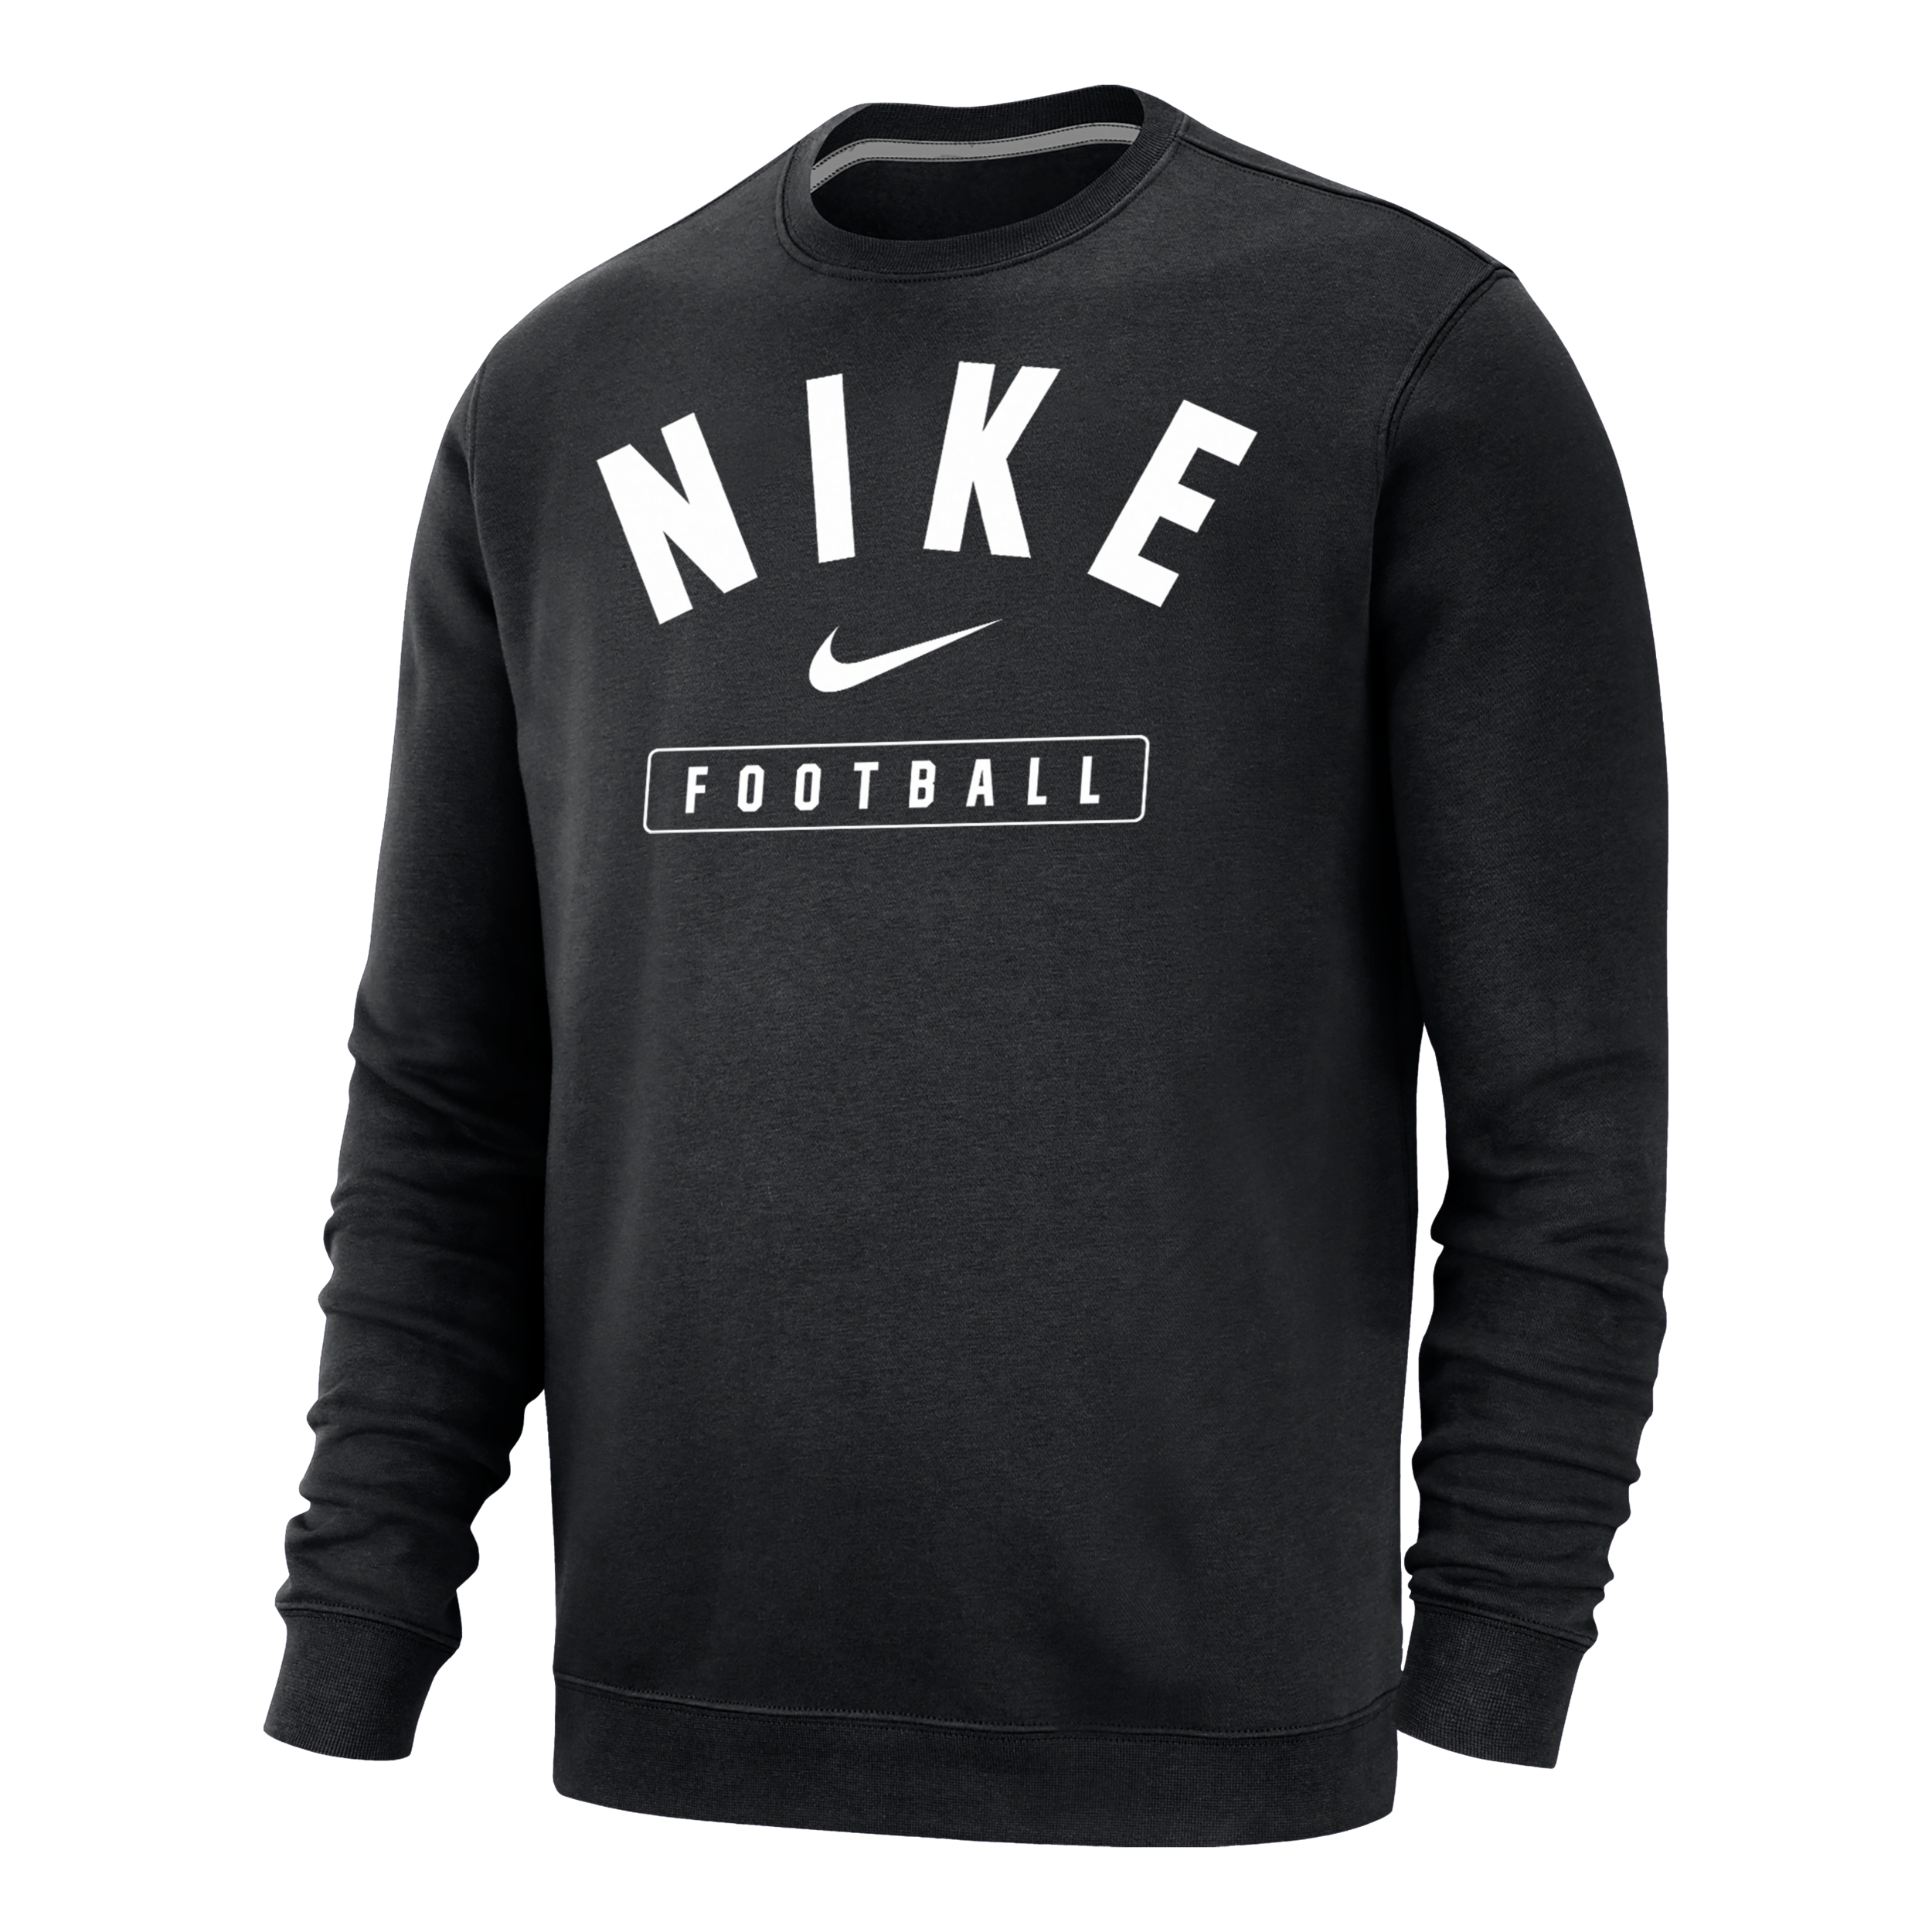 Nike Men's Football Crew-neck Sweatshirt In Black